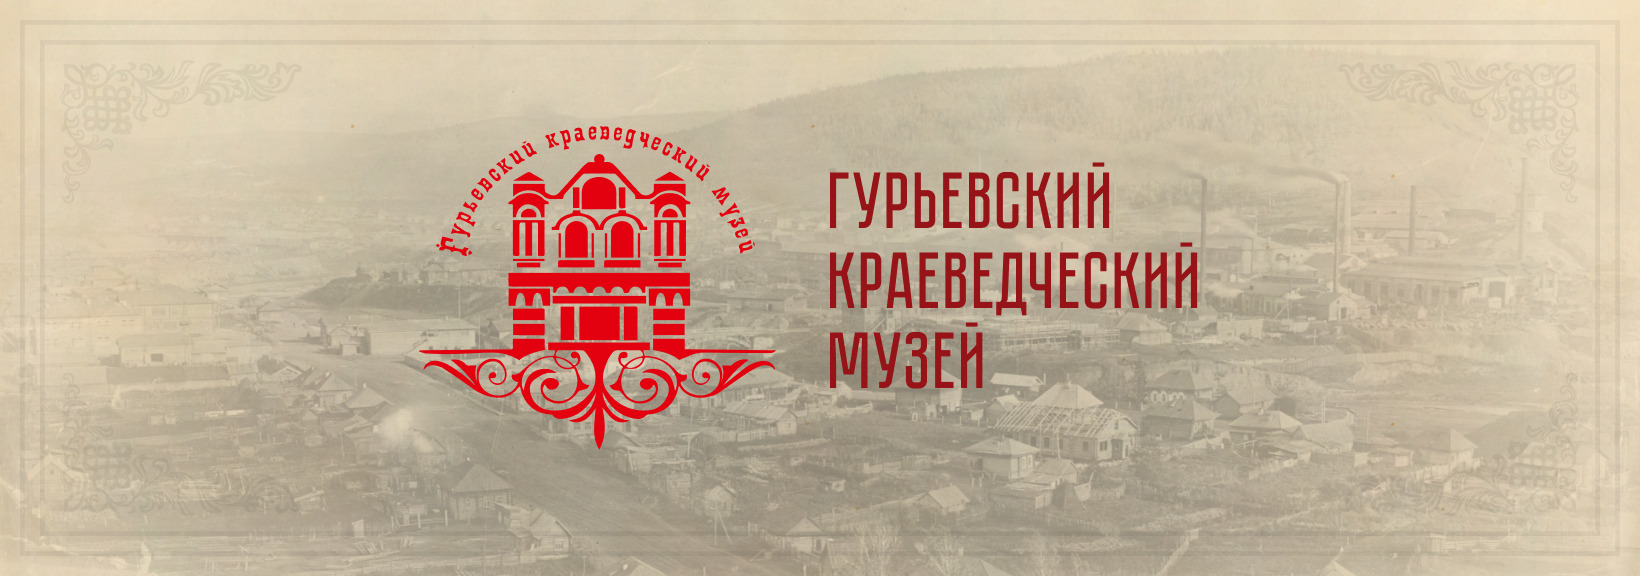 Информационный киоск для Гурьевского городского краеведческого музея